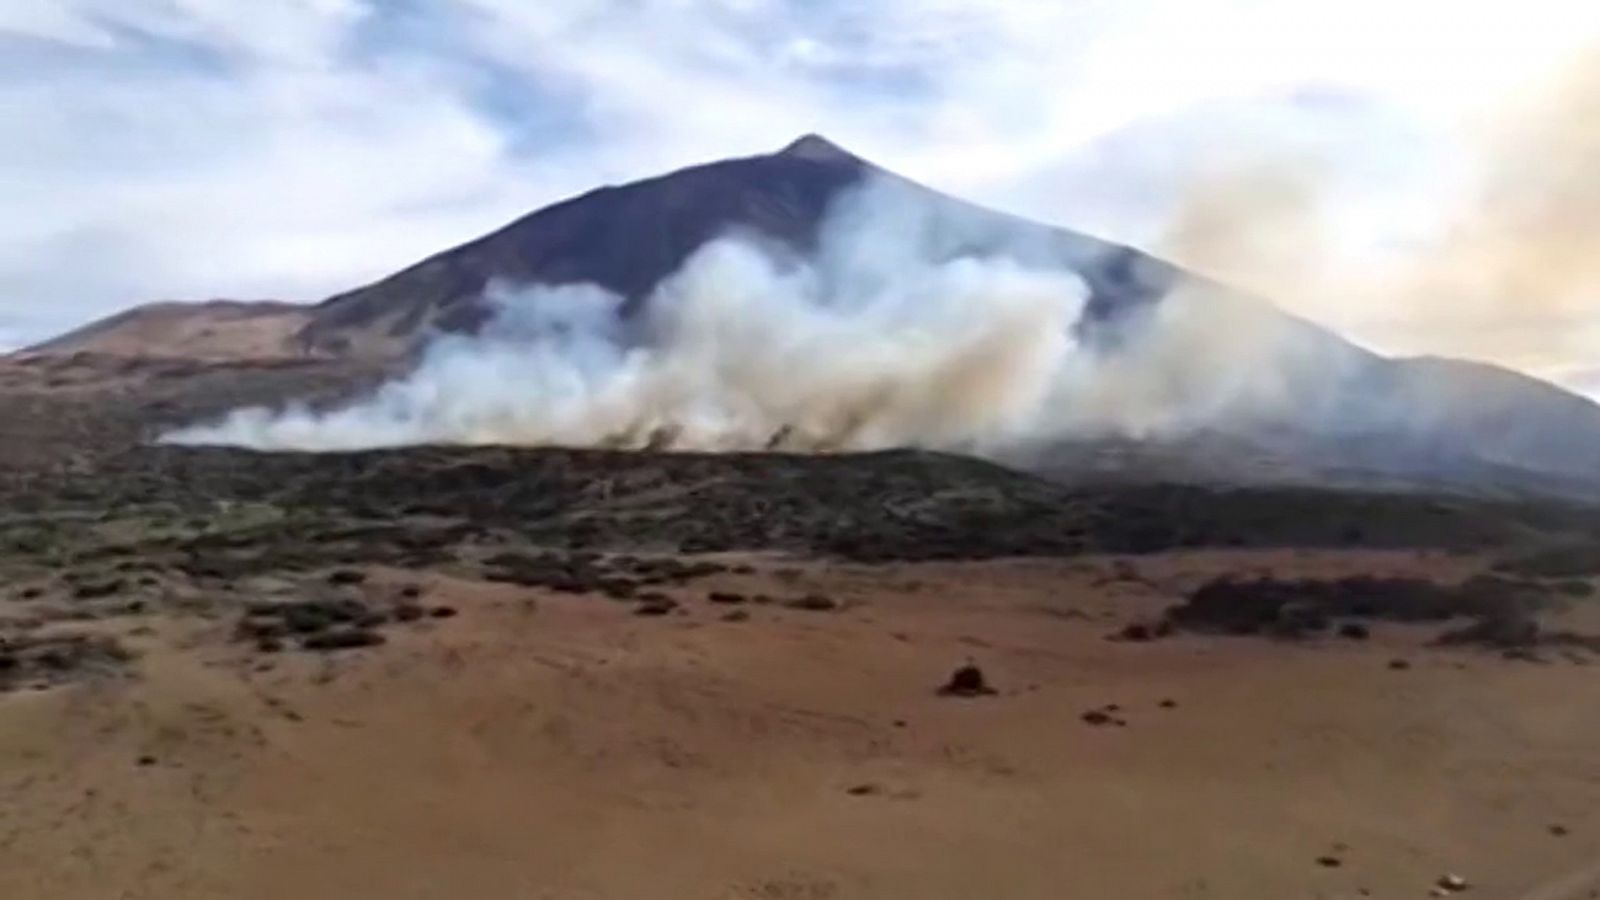 Incendios: El viento y el acceso dificultan la extinción del fuego del Teide - RTVE.es